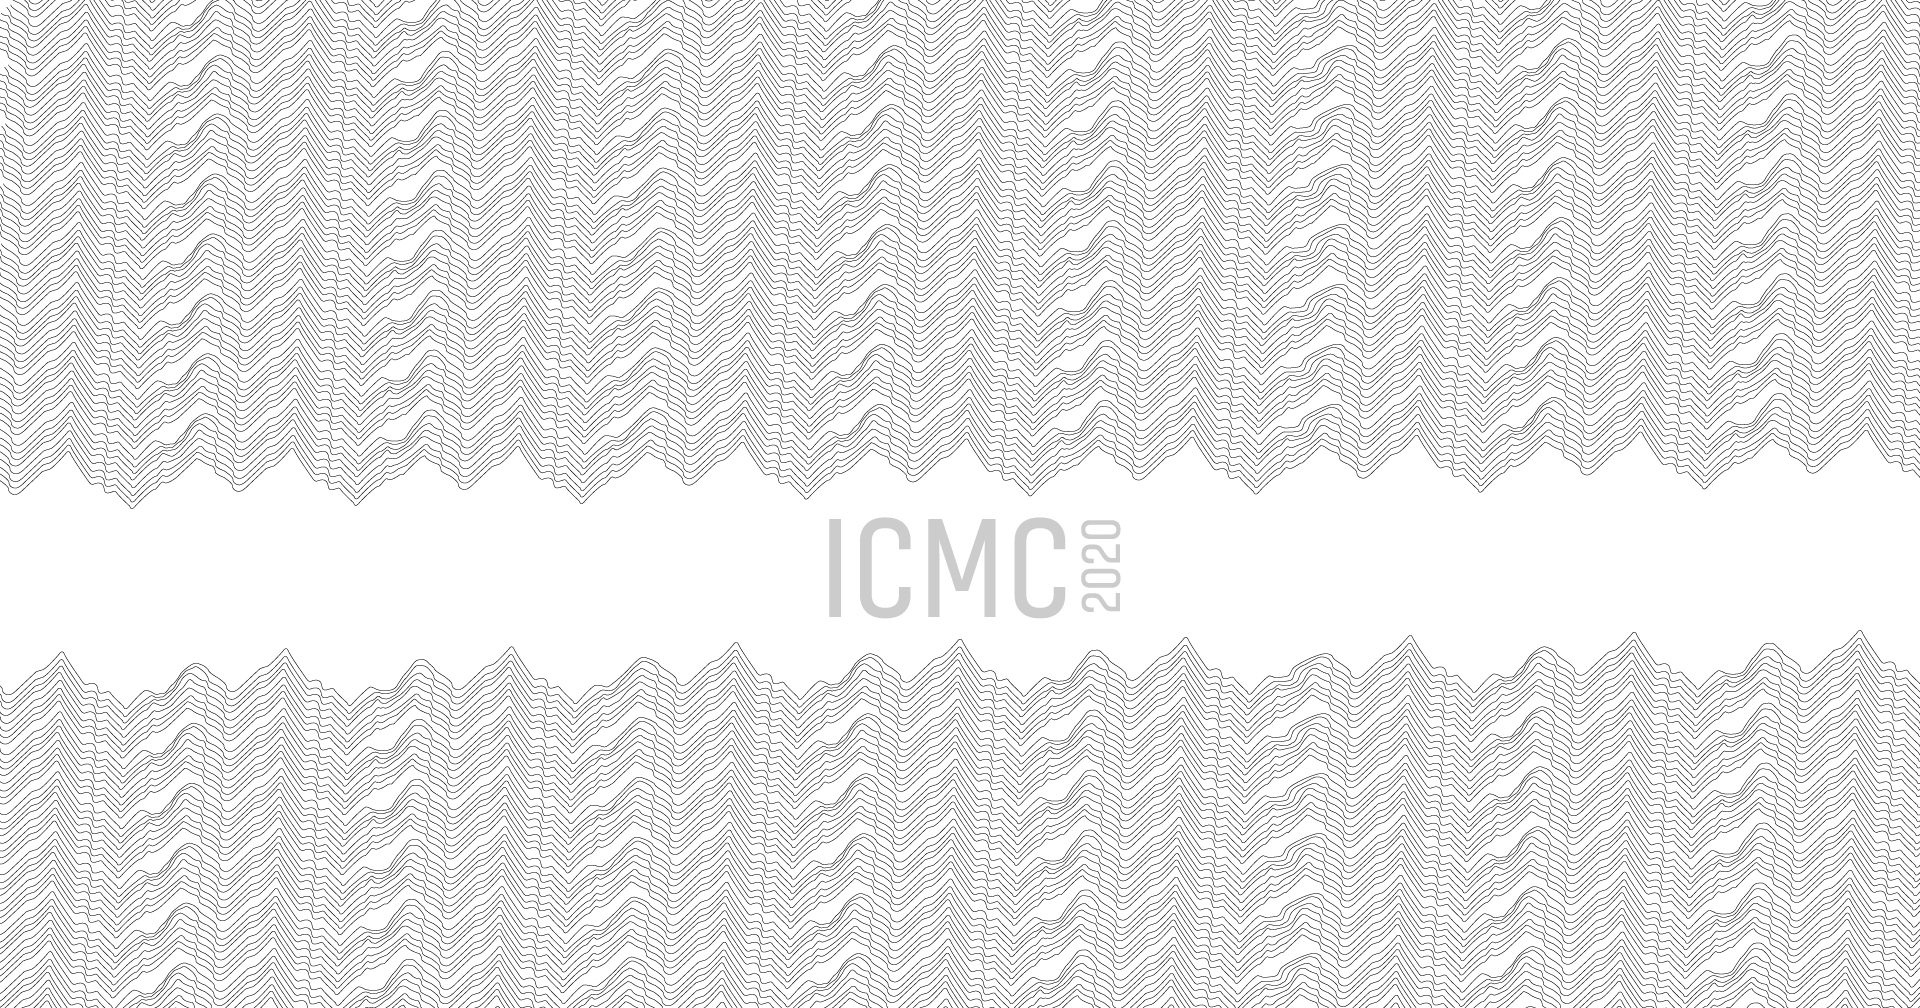 ICMC 2021